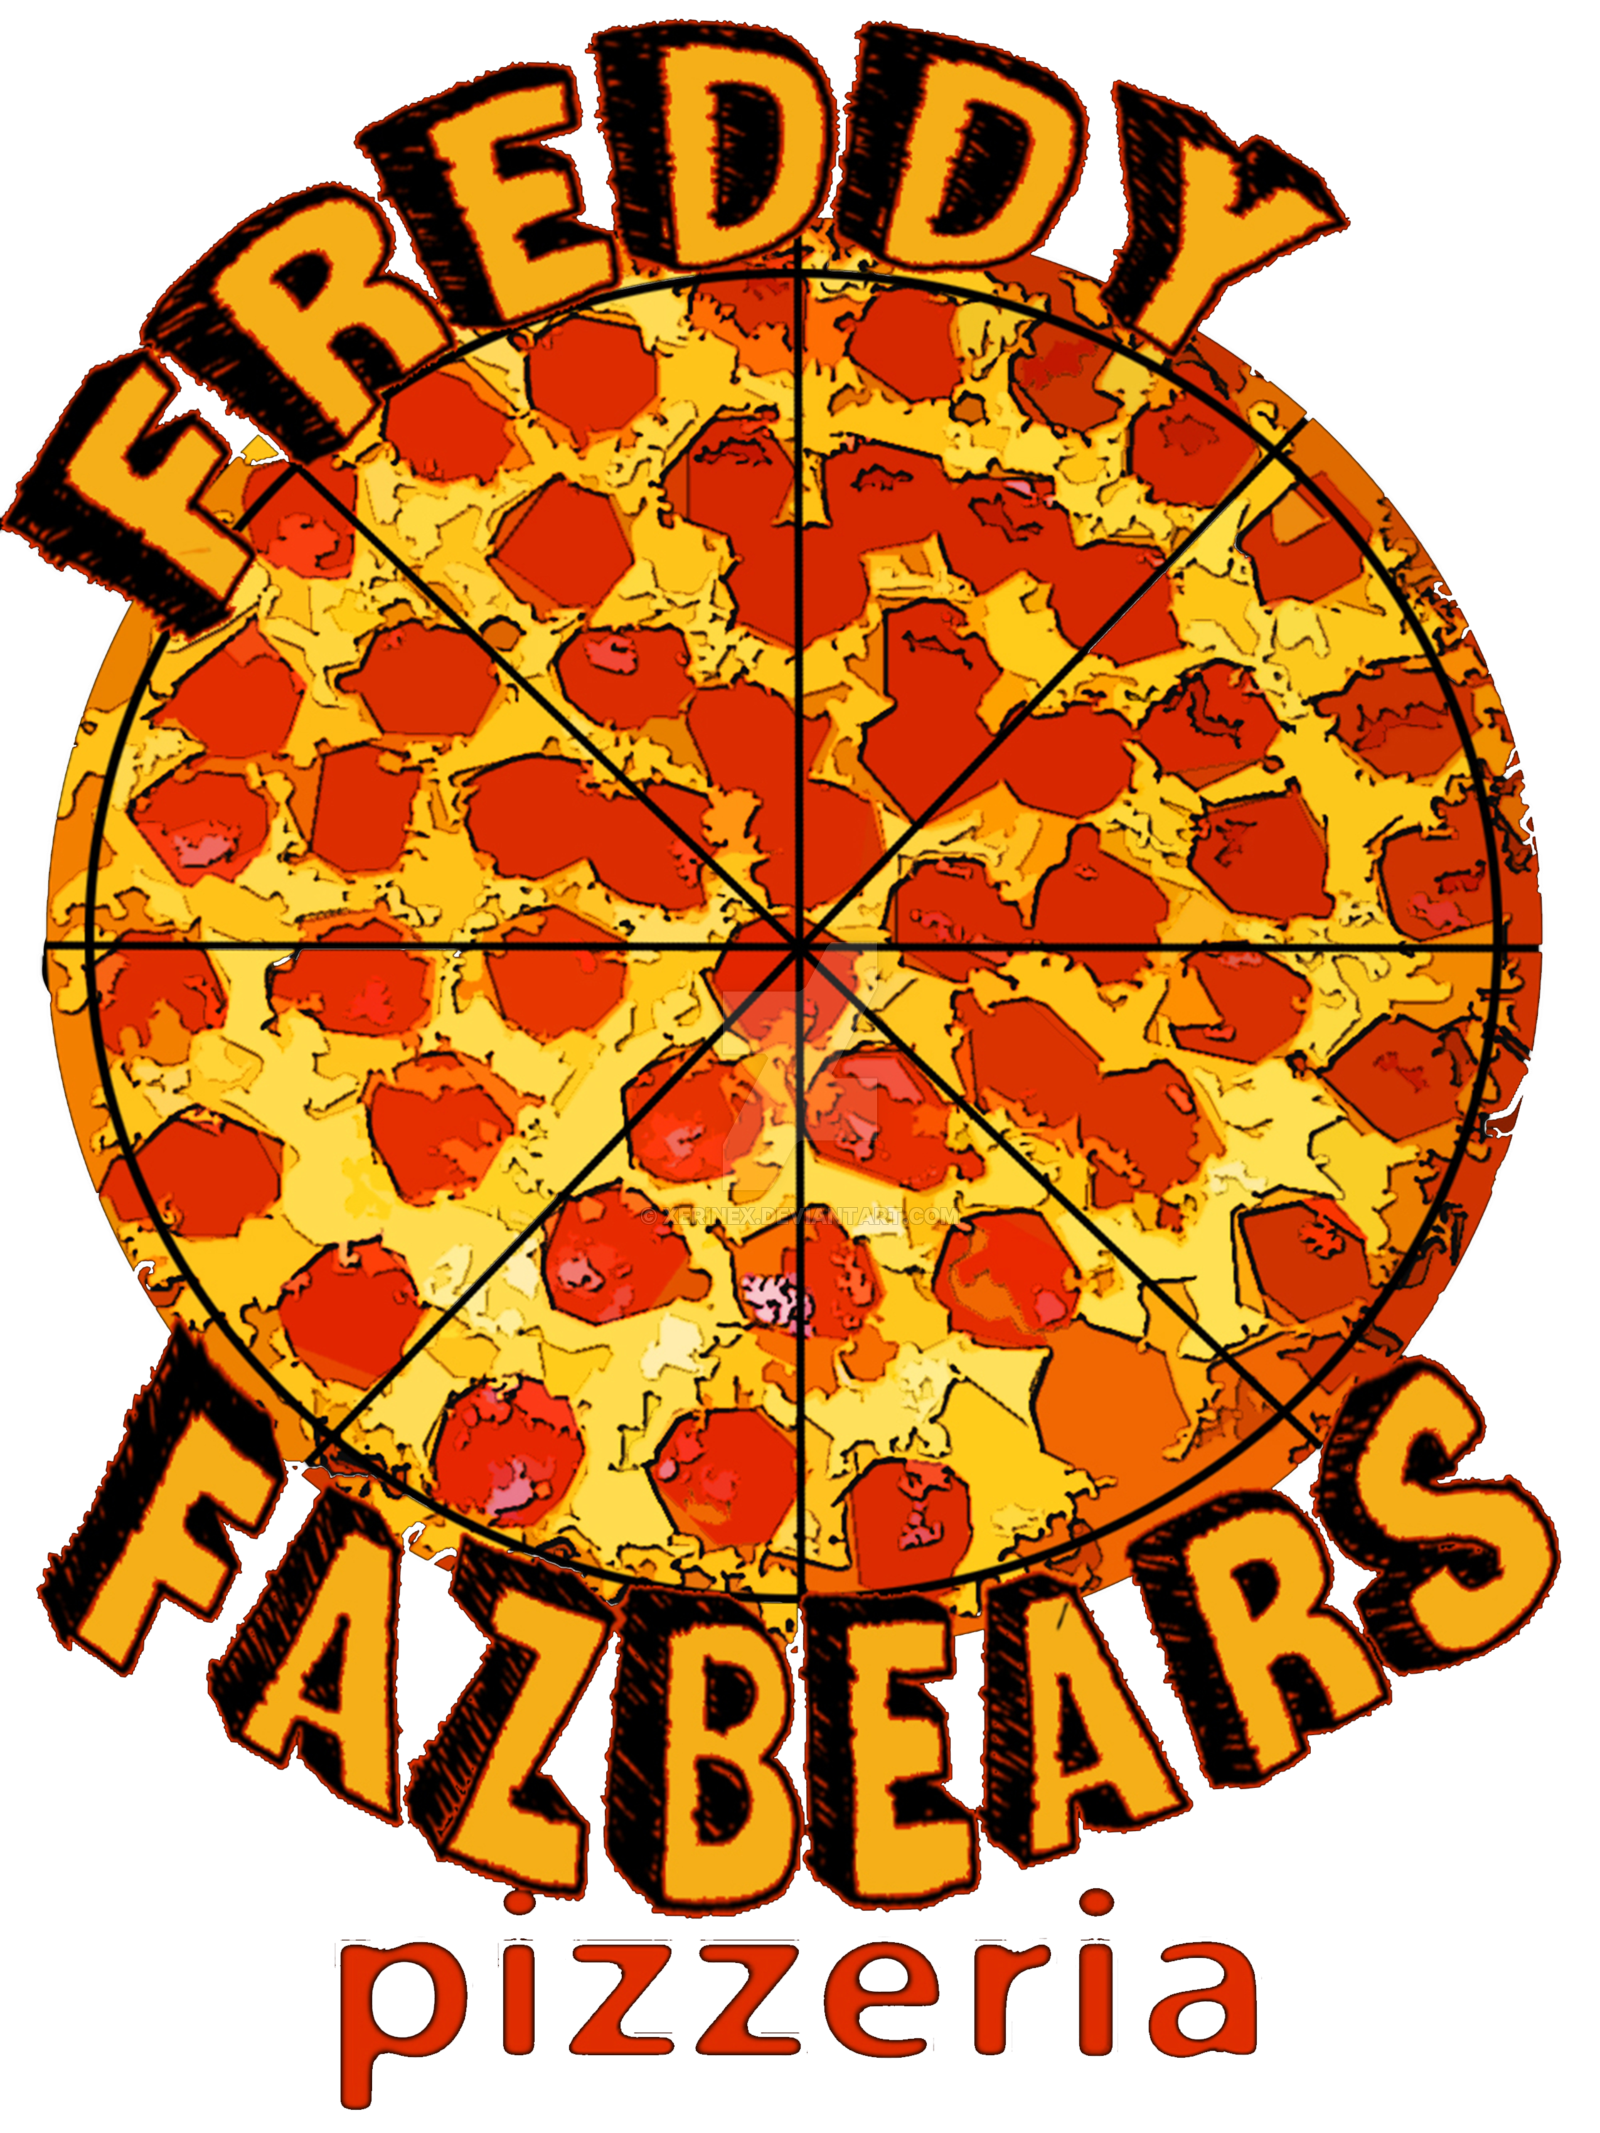 Freddy s pizzeria. Пицца ФНАФ. Пицца из ФНАФ. Пицца Фредди. Логотип пиццерии.